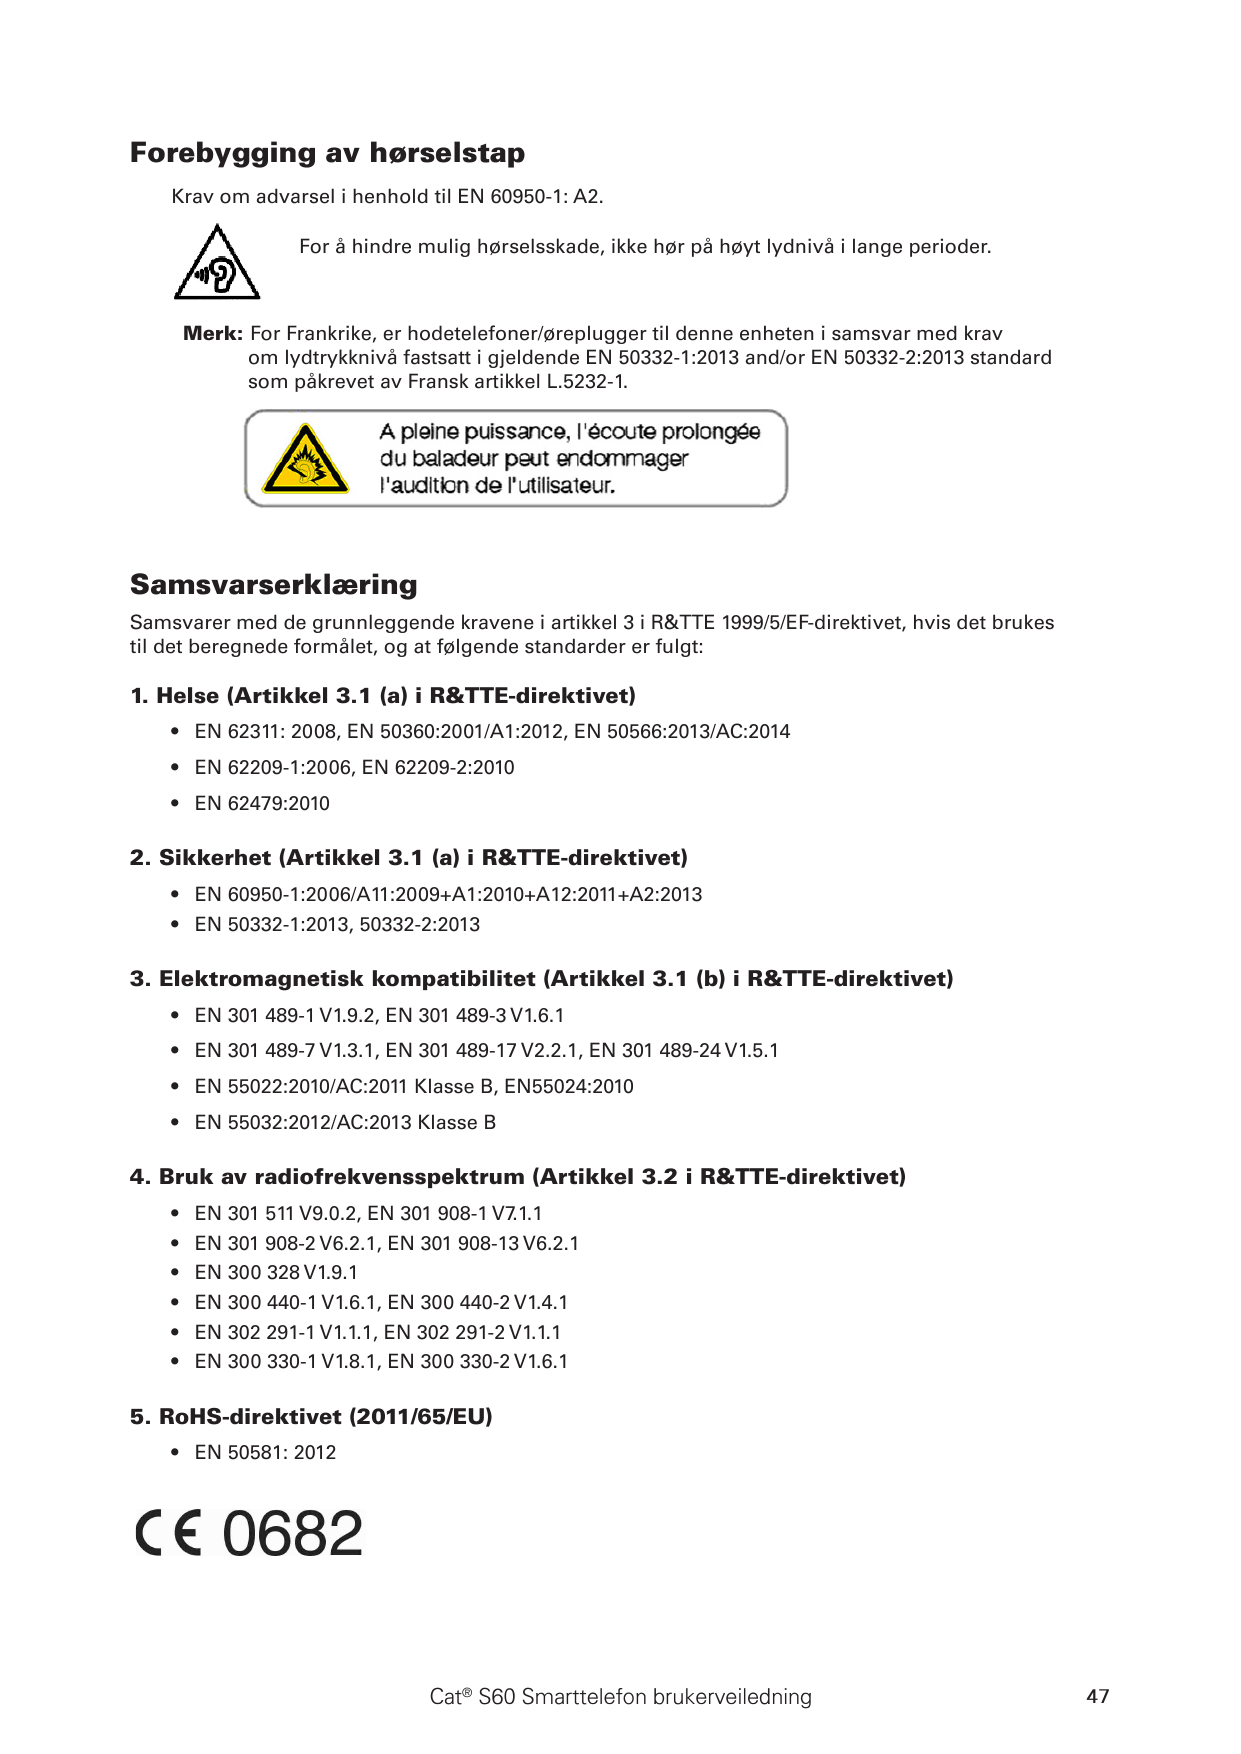 Forebygging av hørselstapKrav om advarsel i henhold til EN 60950-1: A2.For å hindre mulig hørselsskade, ikke hør på høyt lydnivå